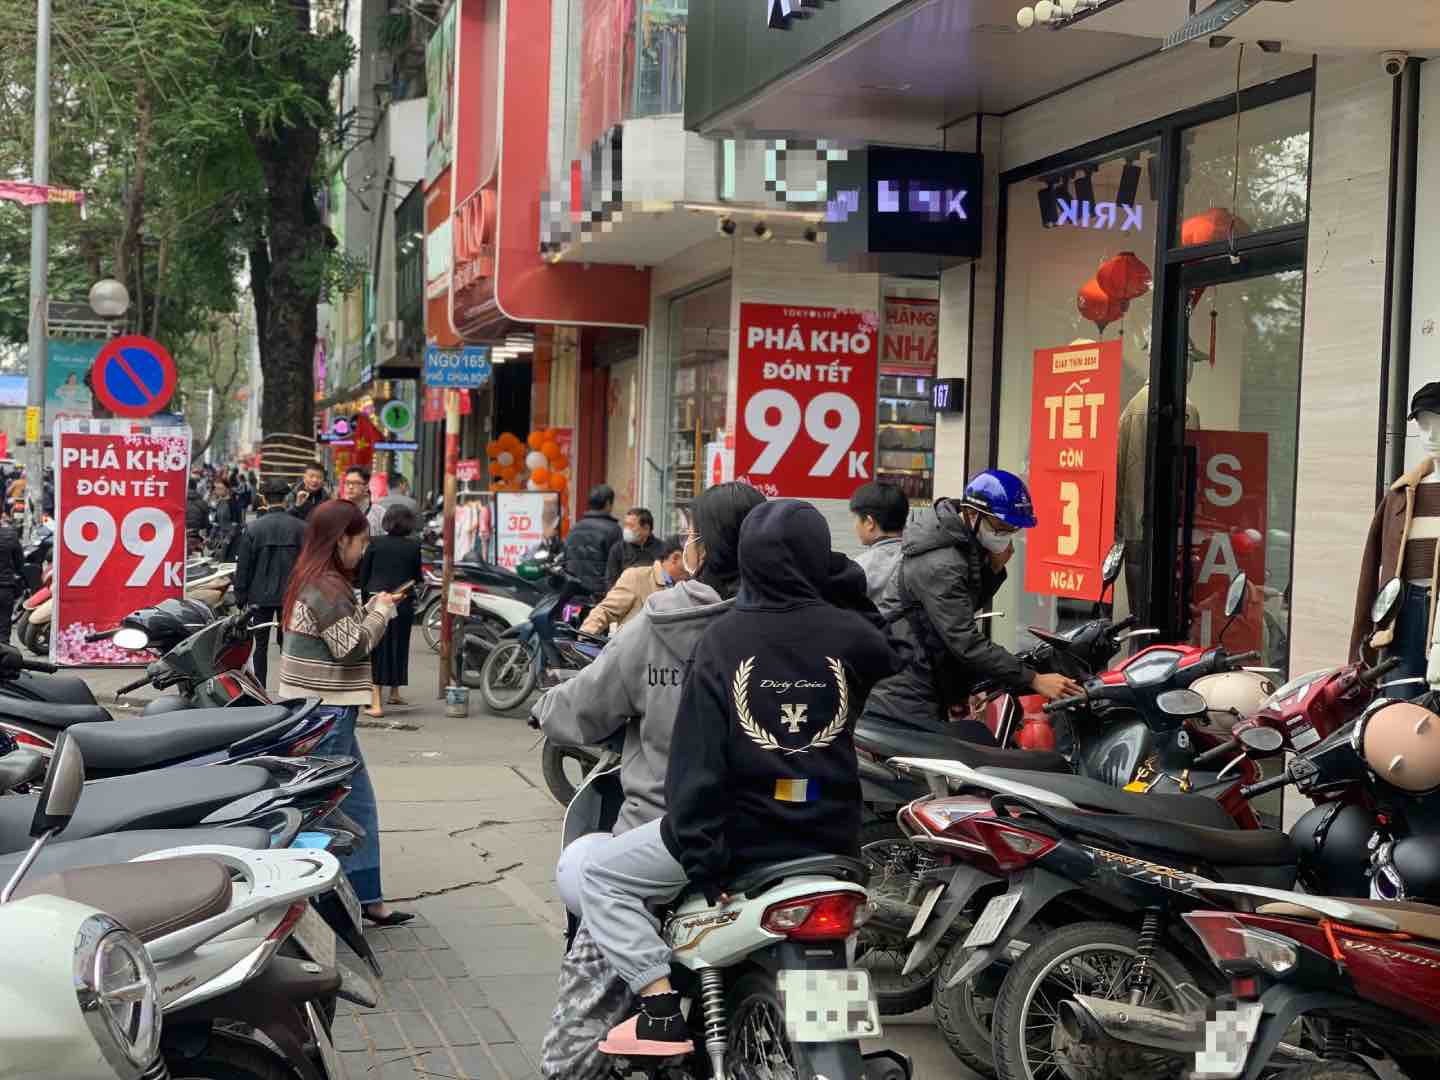 “Ma trận” đồ giảm giá trên phố Chùa Bộc đã thu hút được nhiều người dân tới mua. Ảnh: Nhật Minh